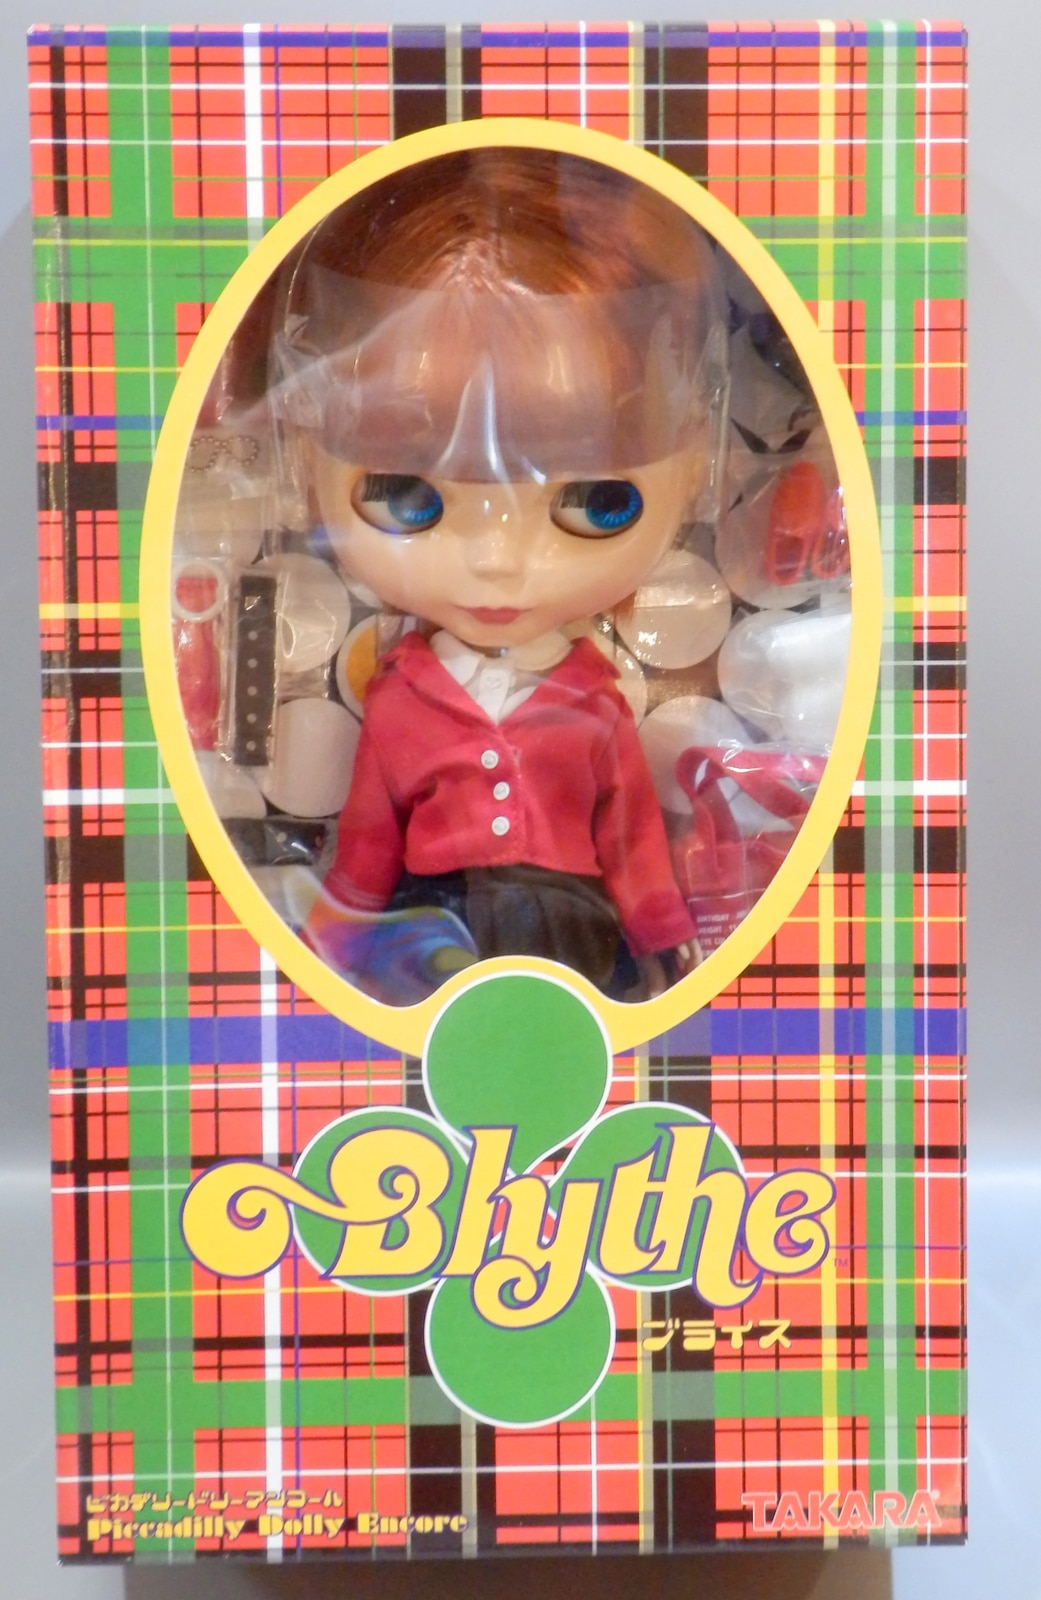 Blythe ネオブライス ピカデリードリー - 趣味/おもちゃ